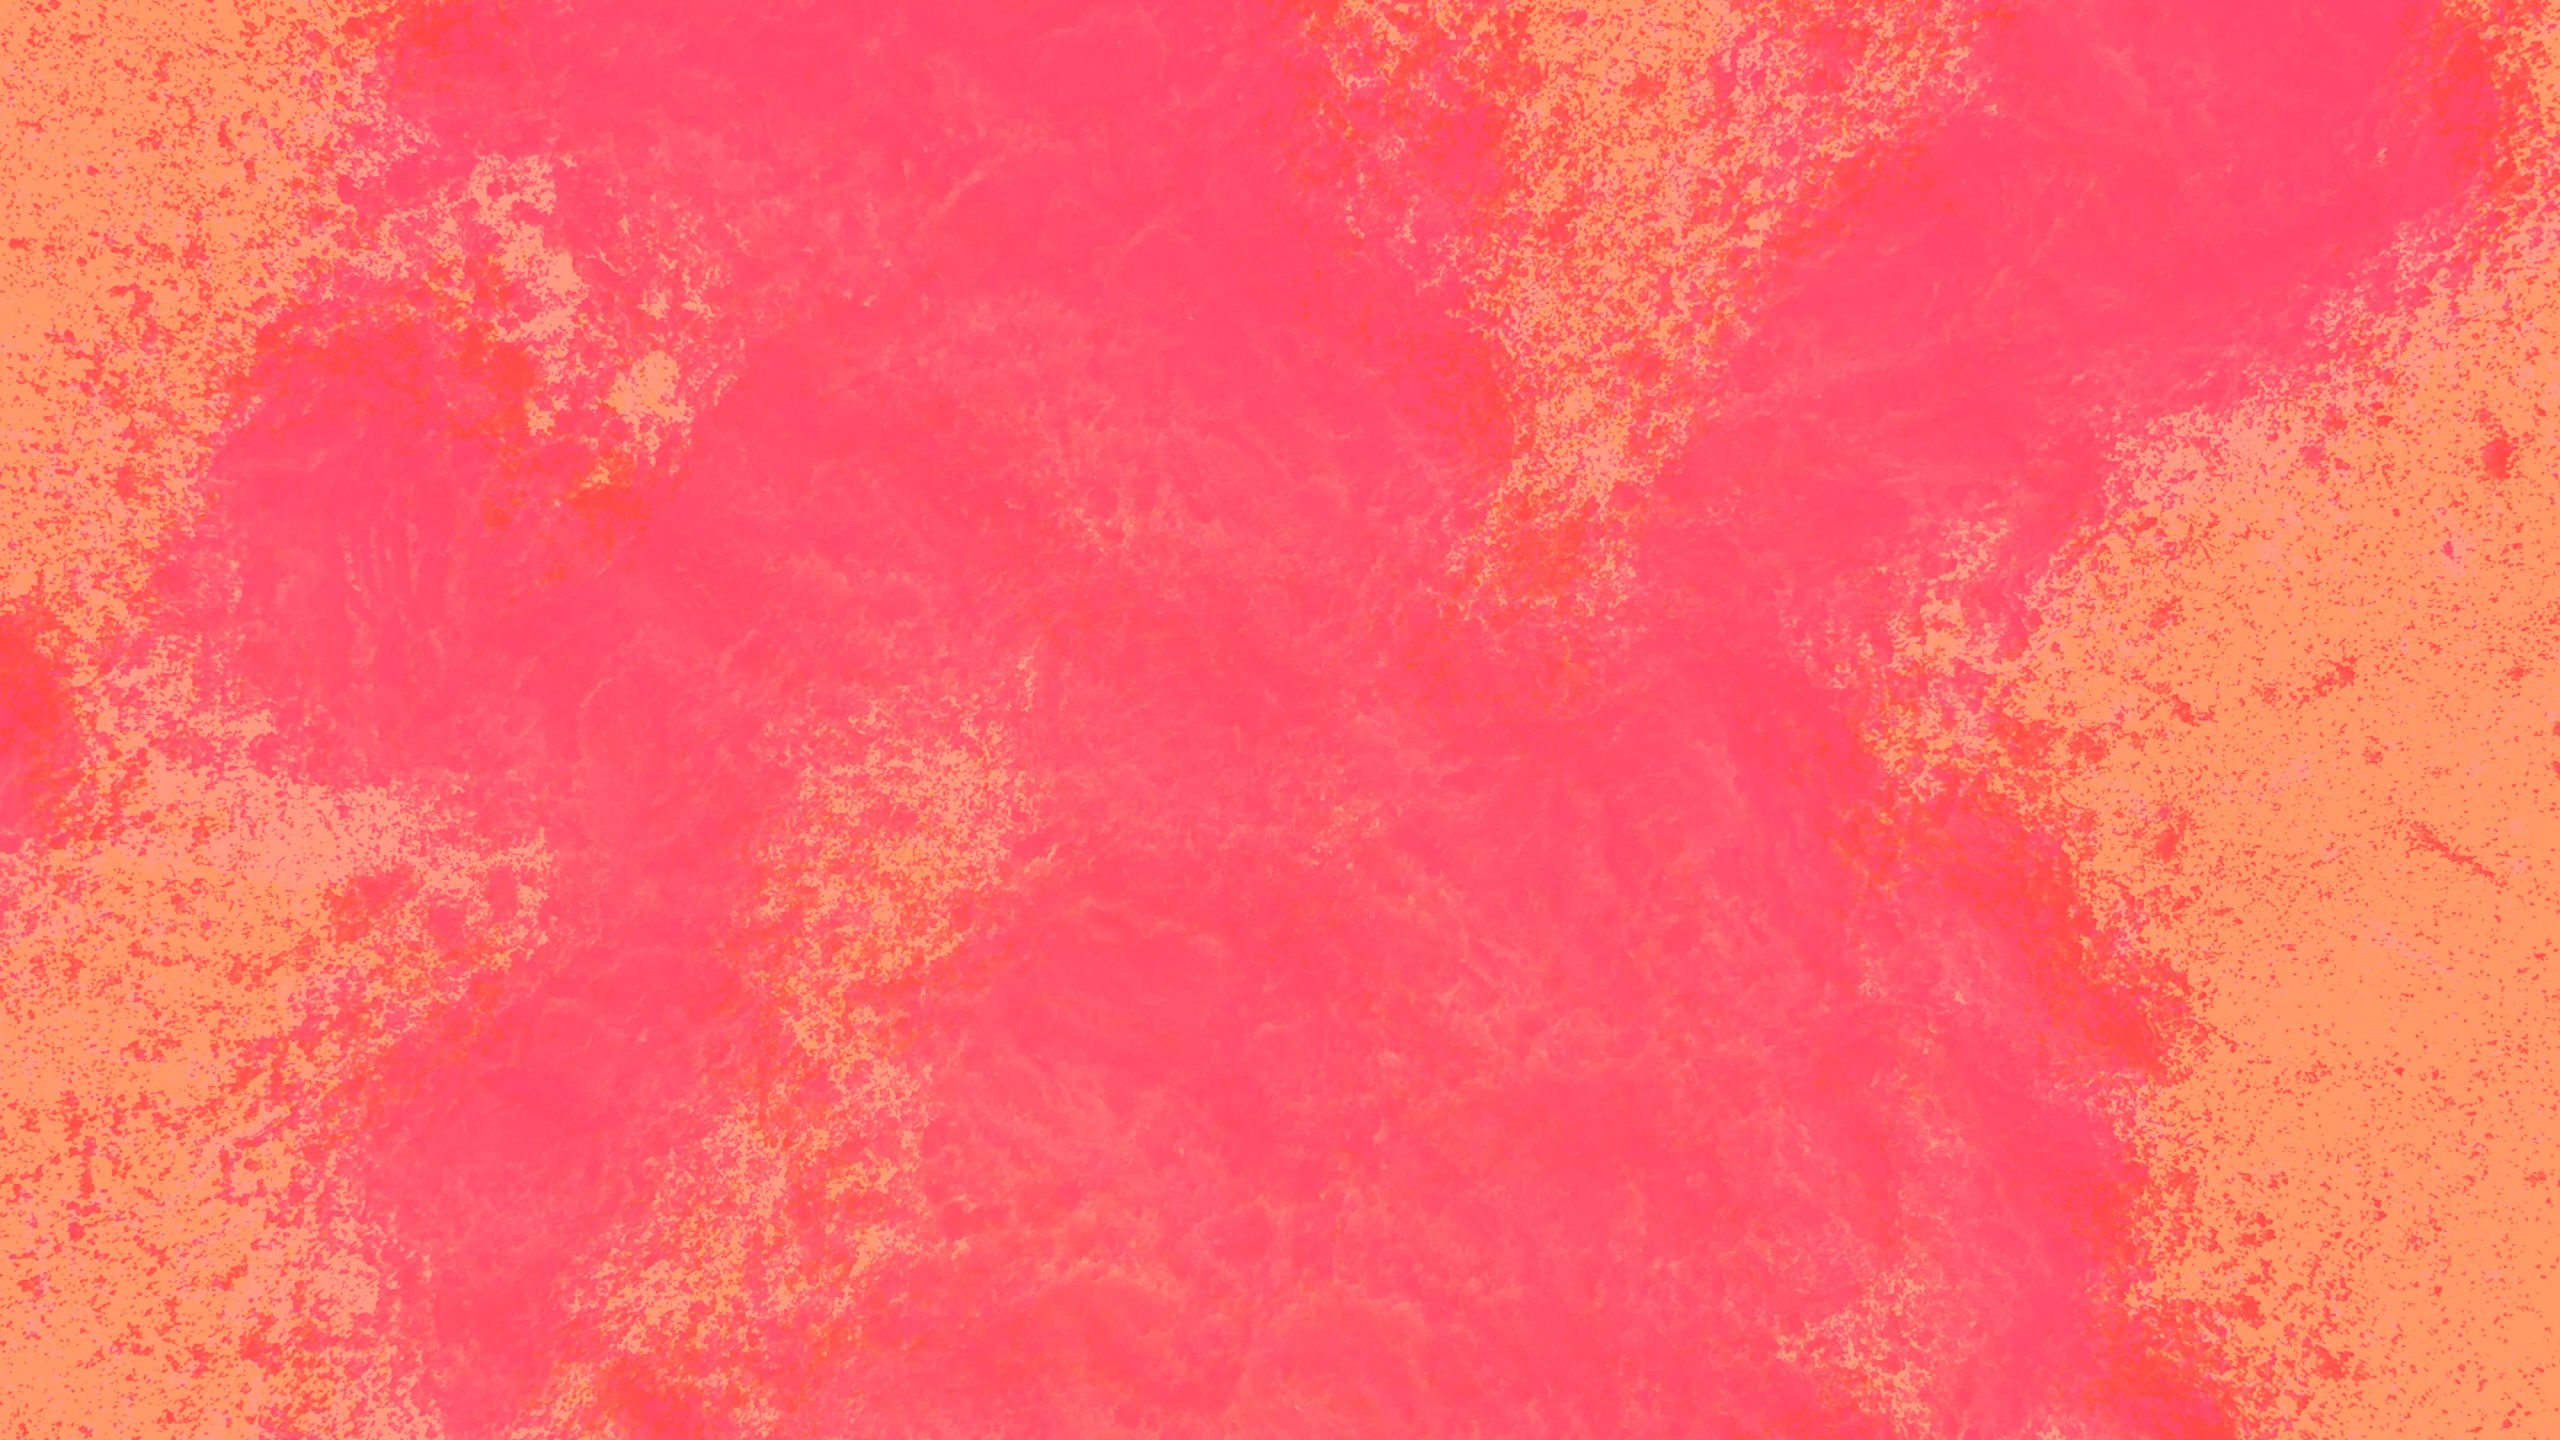 Holi-illustration-orange-pink-background